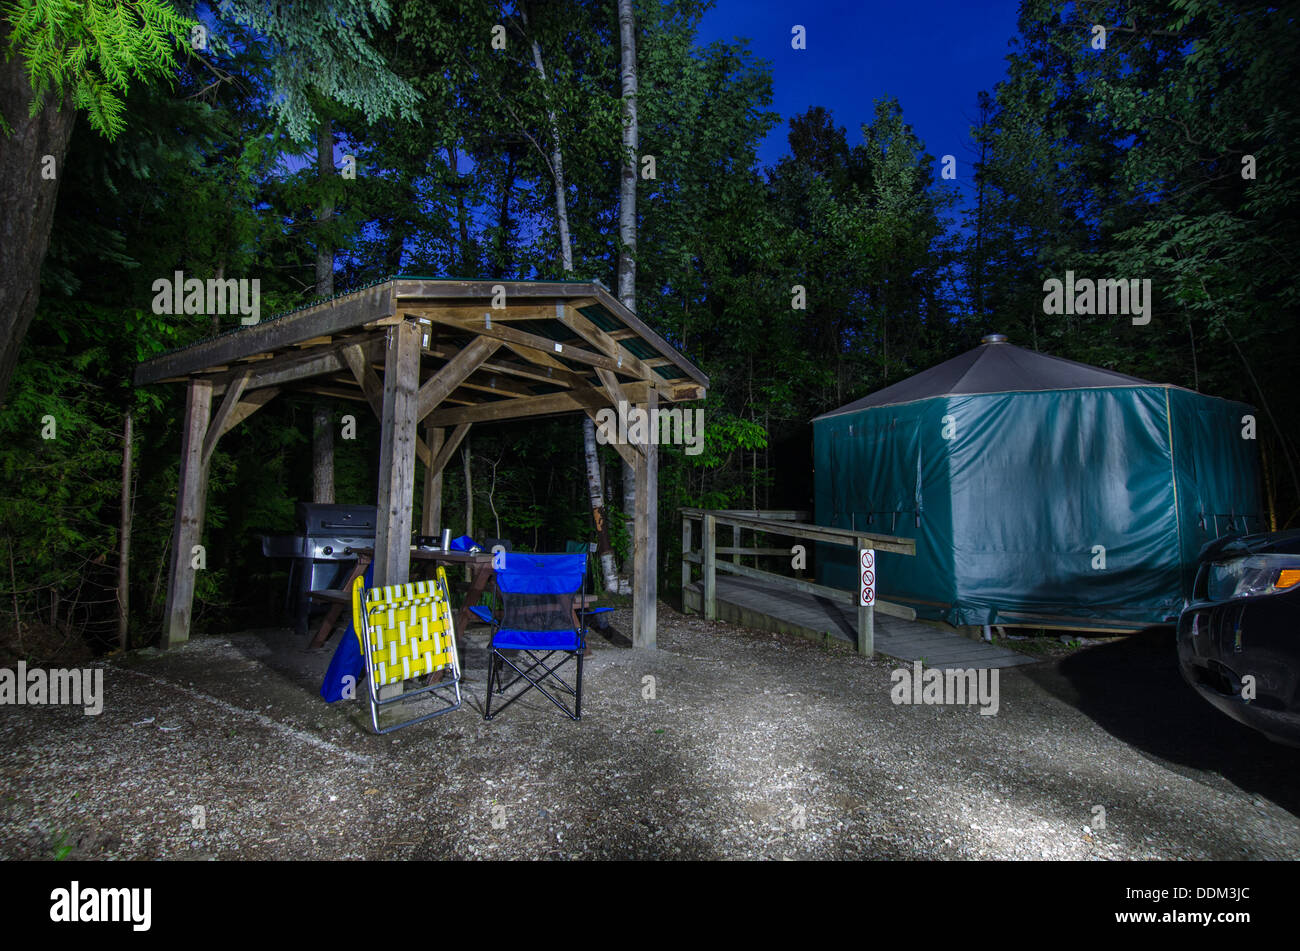 Yurt campsite at night. Stock Photo